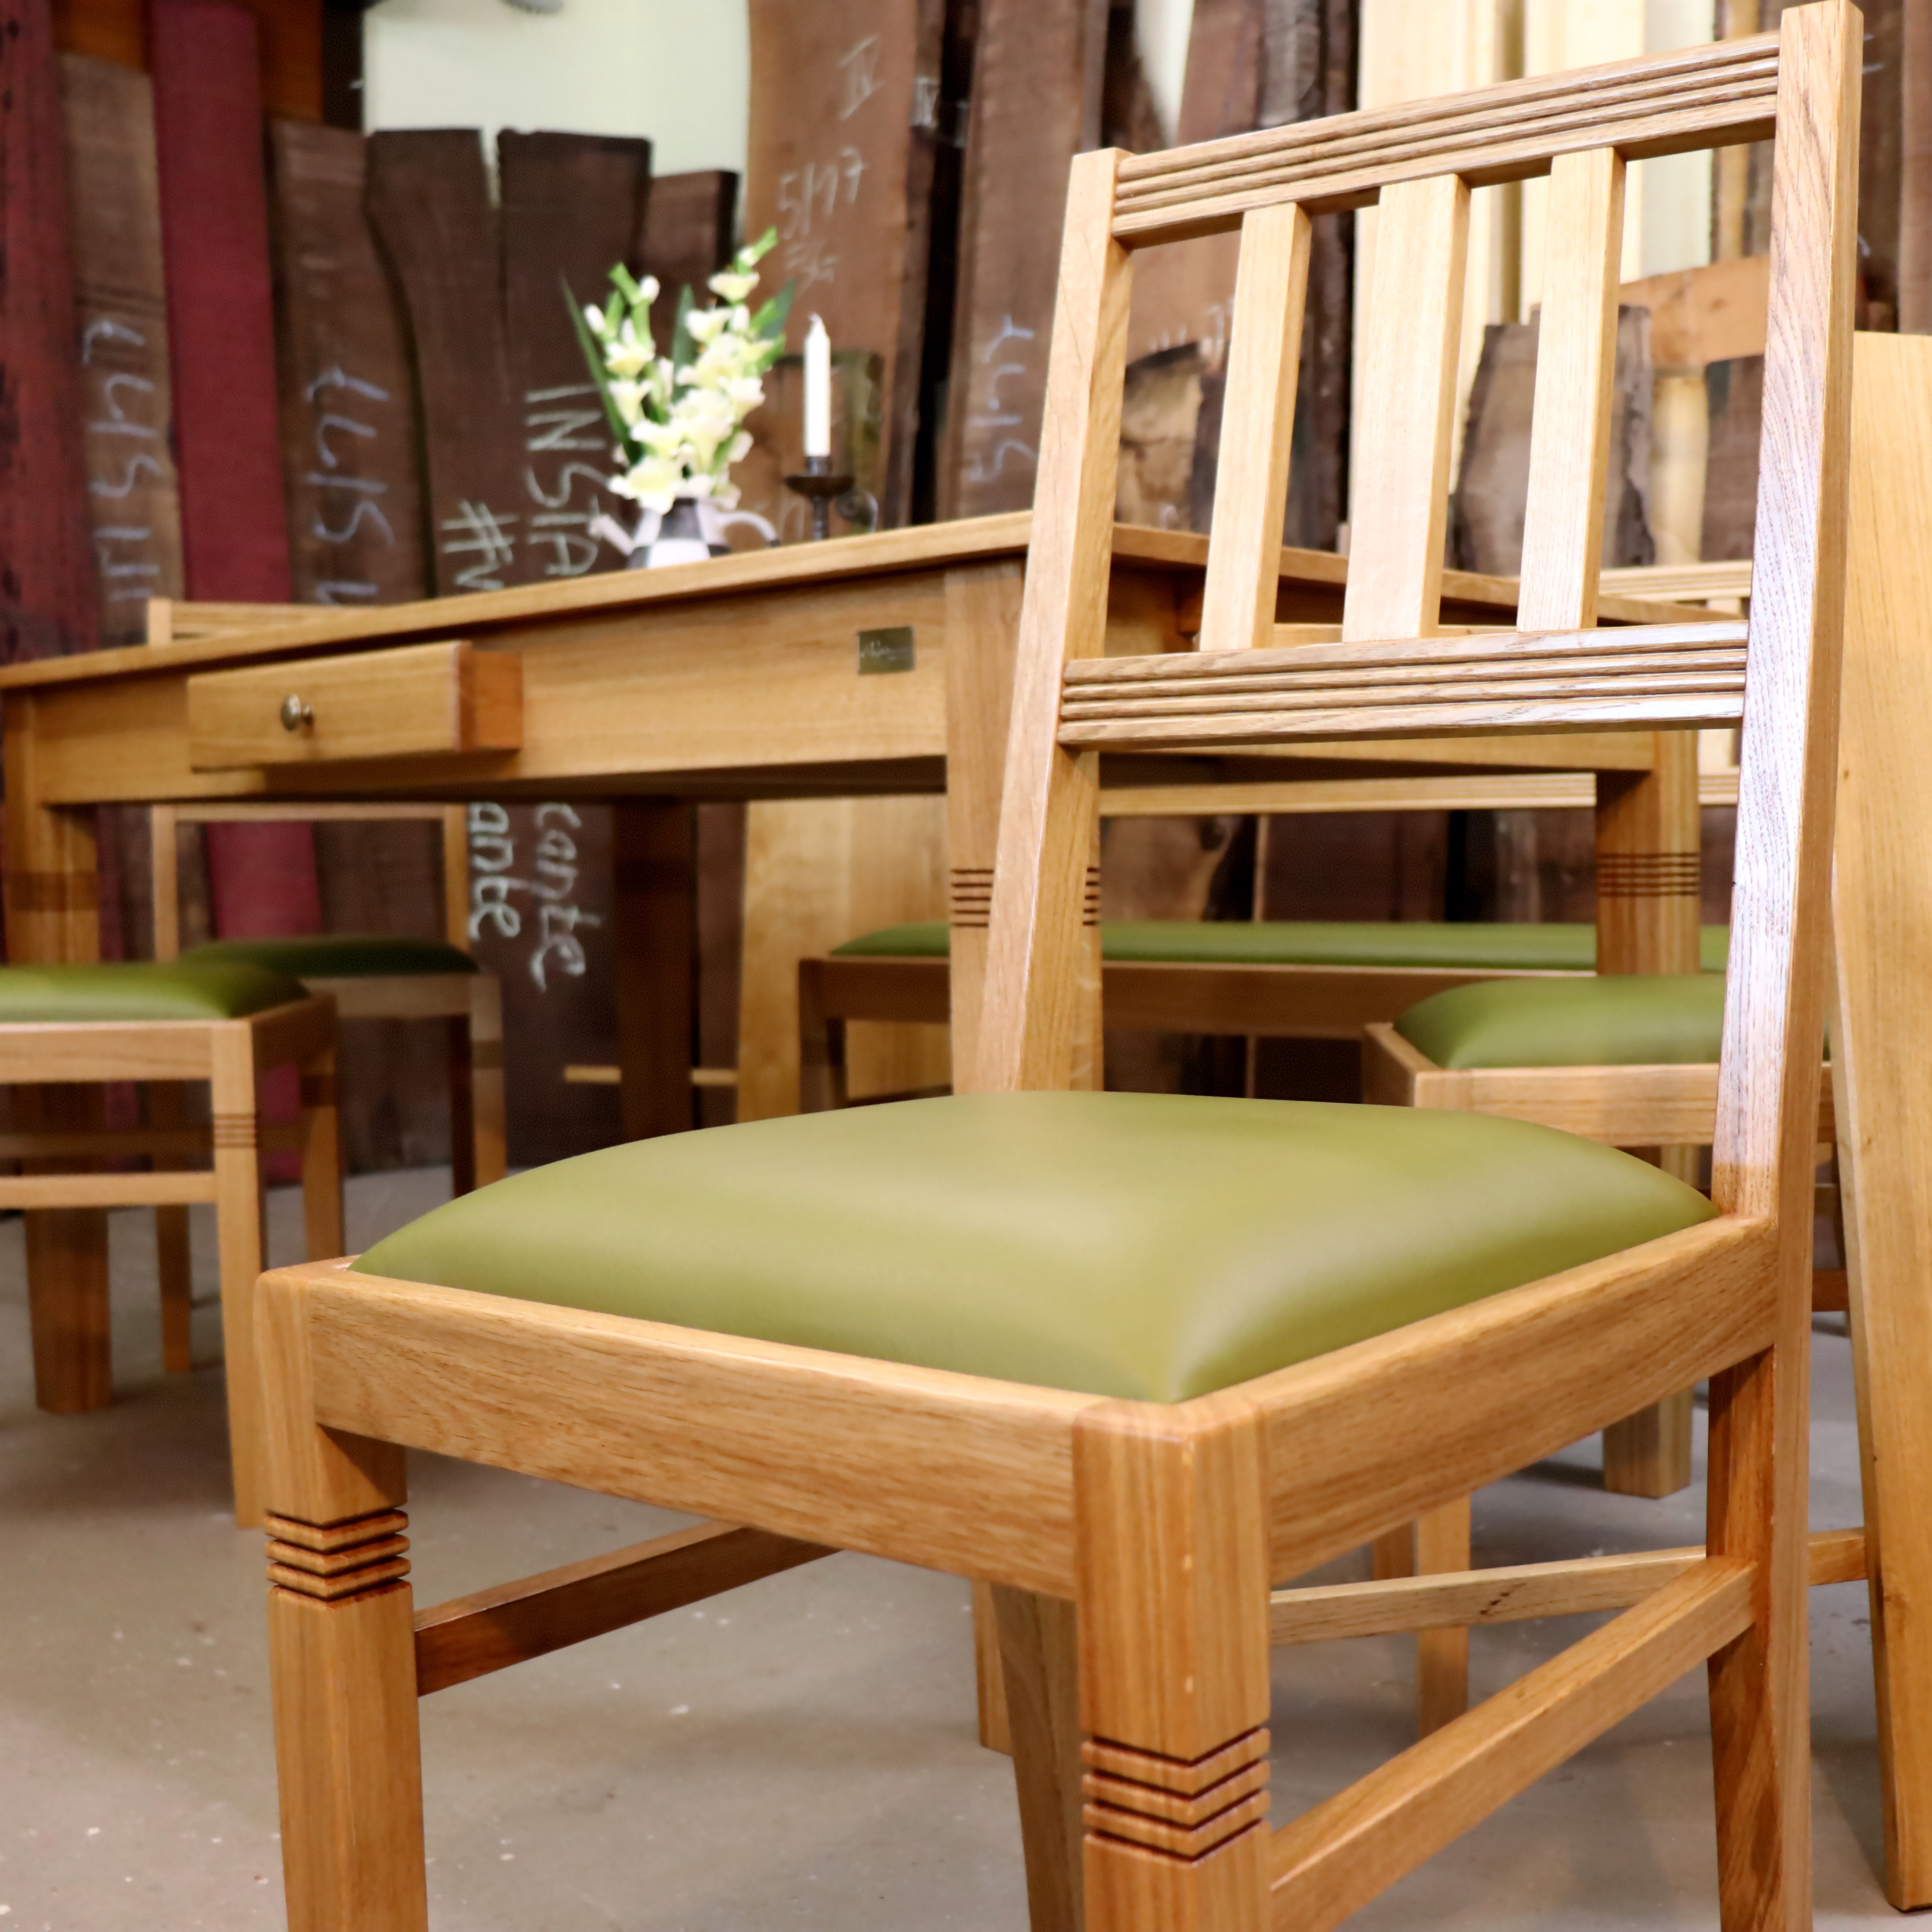 Stuhl Sitzfläche Leder grün Polster Eiche Holz Handarbeit auf Maß